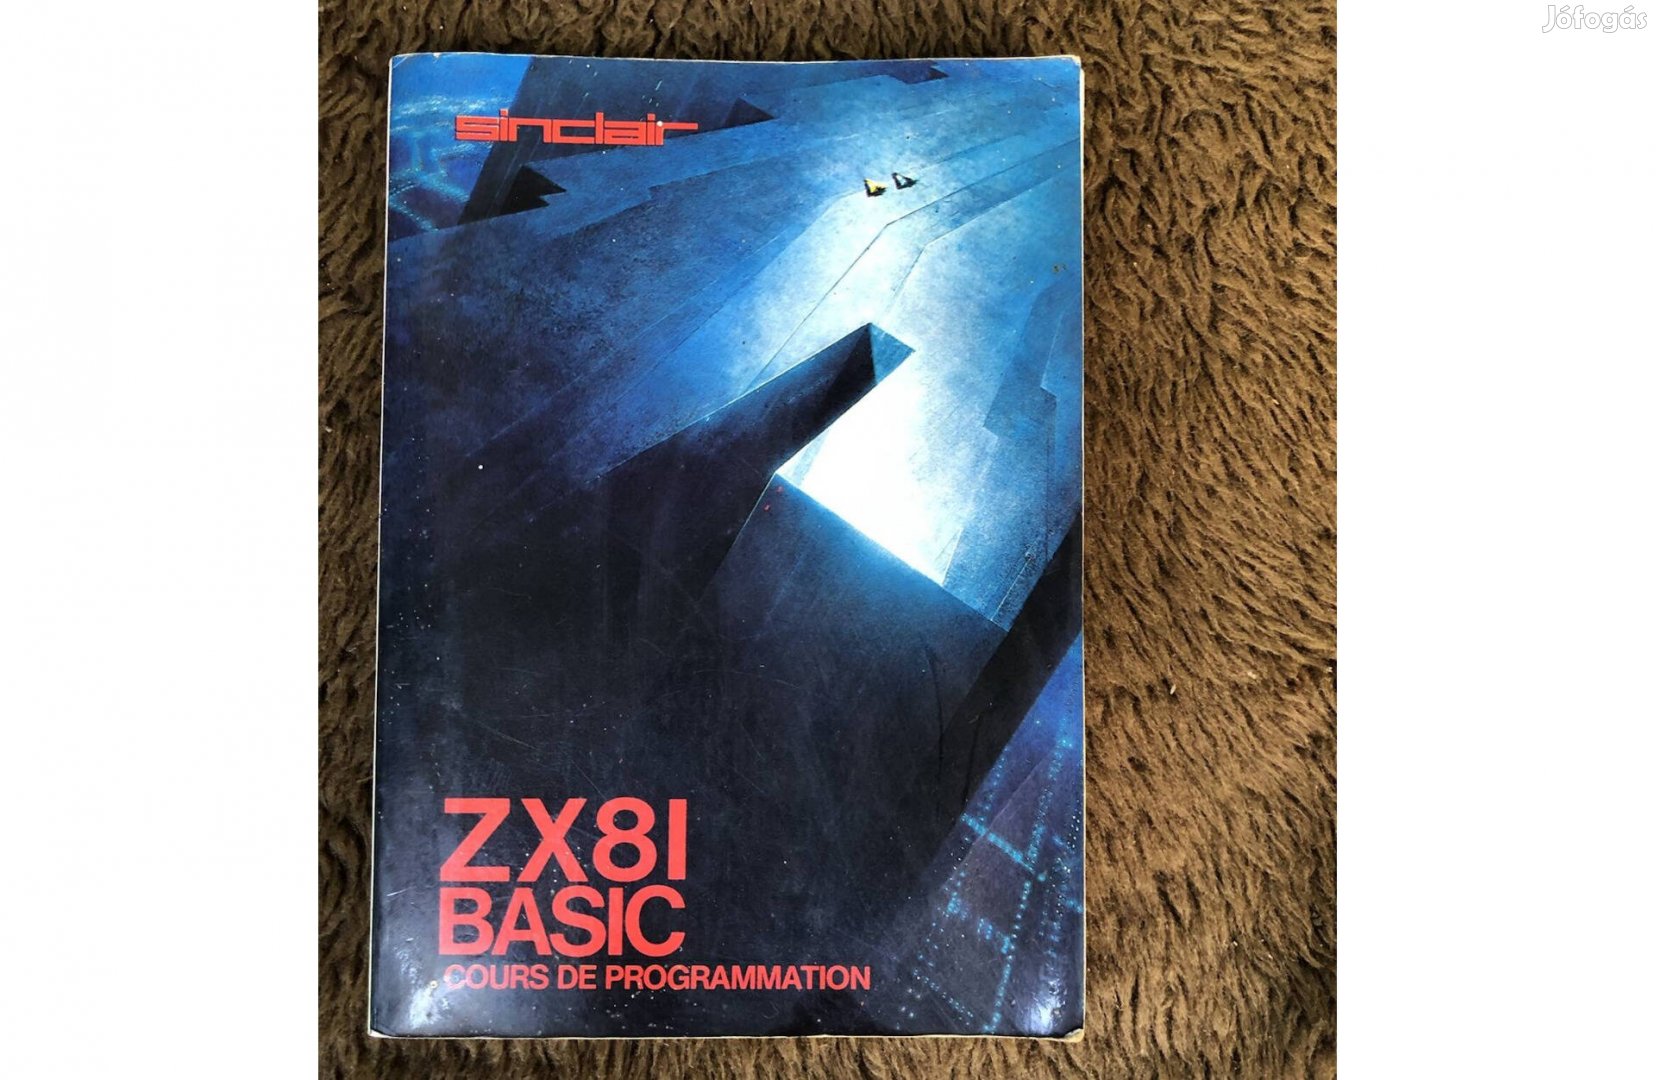 Sinclair Zx81 basic programozói oktató könyv 10000 Ft :Lenti